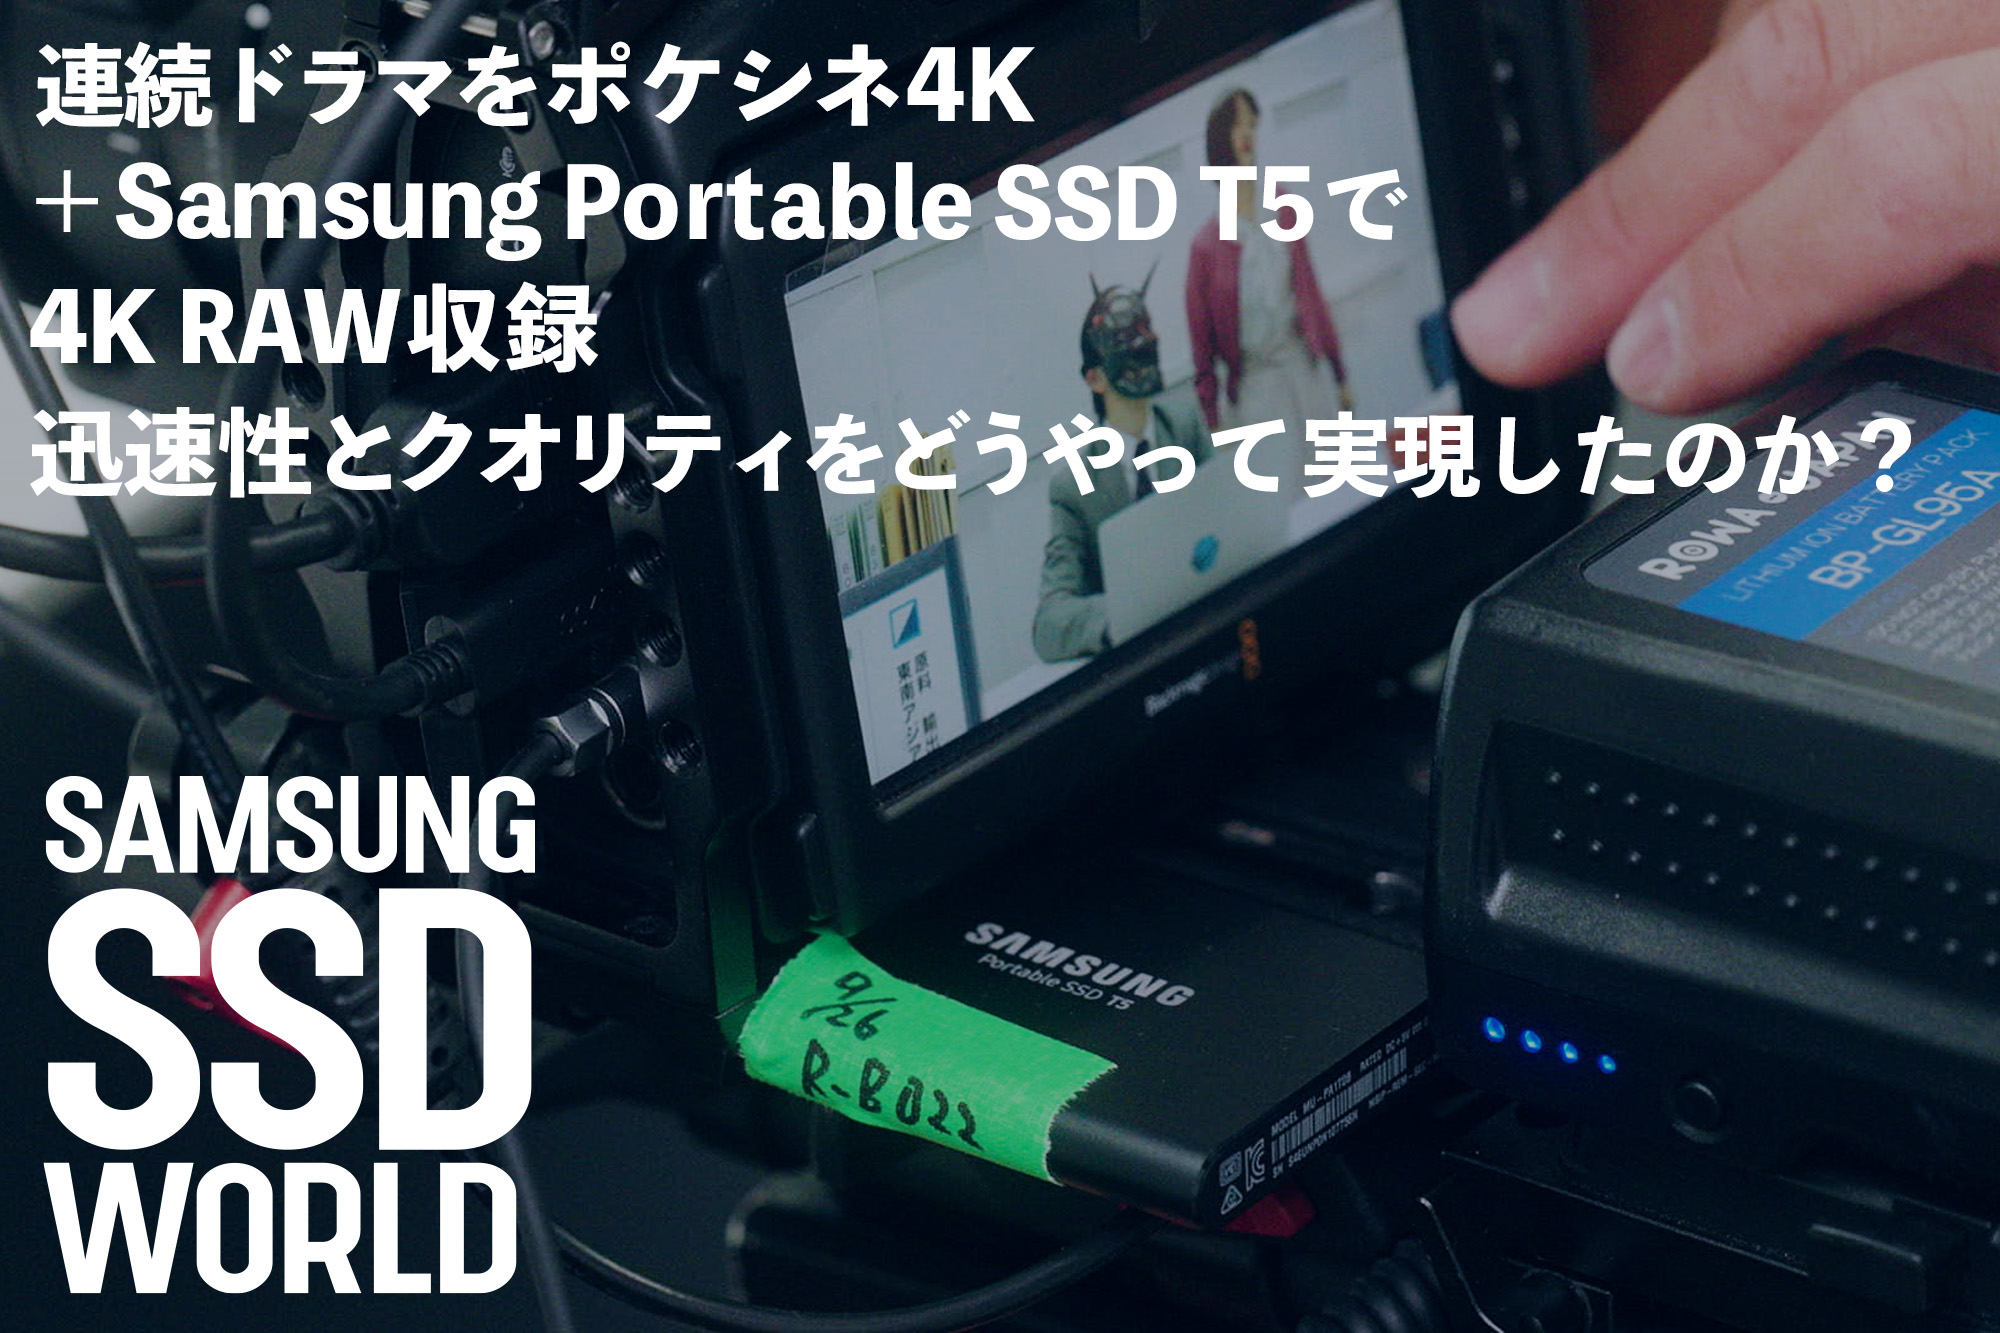 SAMSUNG SSD WORLD】連続ドラマをポケシネ4K＋Samsung Portable SSD T5で 4K RAW収録。迅速性とクオリティをどうやって実現したのか？  | VIDEO SALON